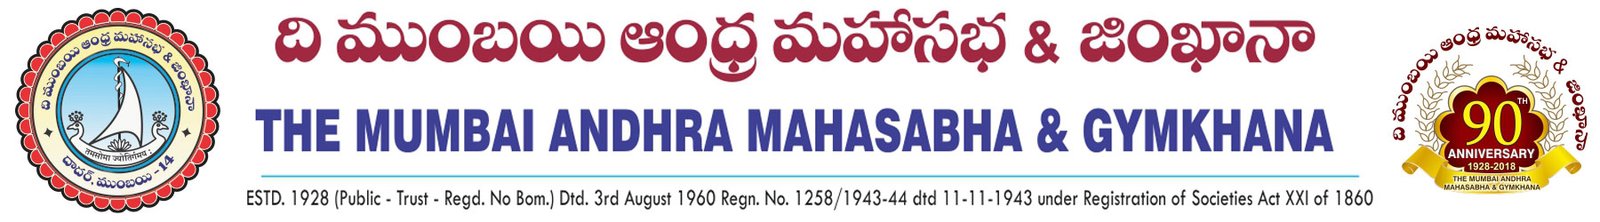 The Mumbai Andhra Mahasabha & Gymkhana - BAMSG - BAMS - TBAMS - TBAMSG Logo